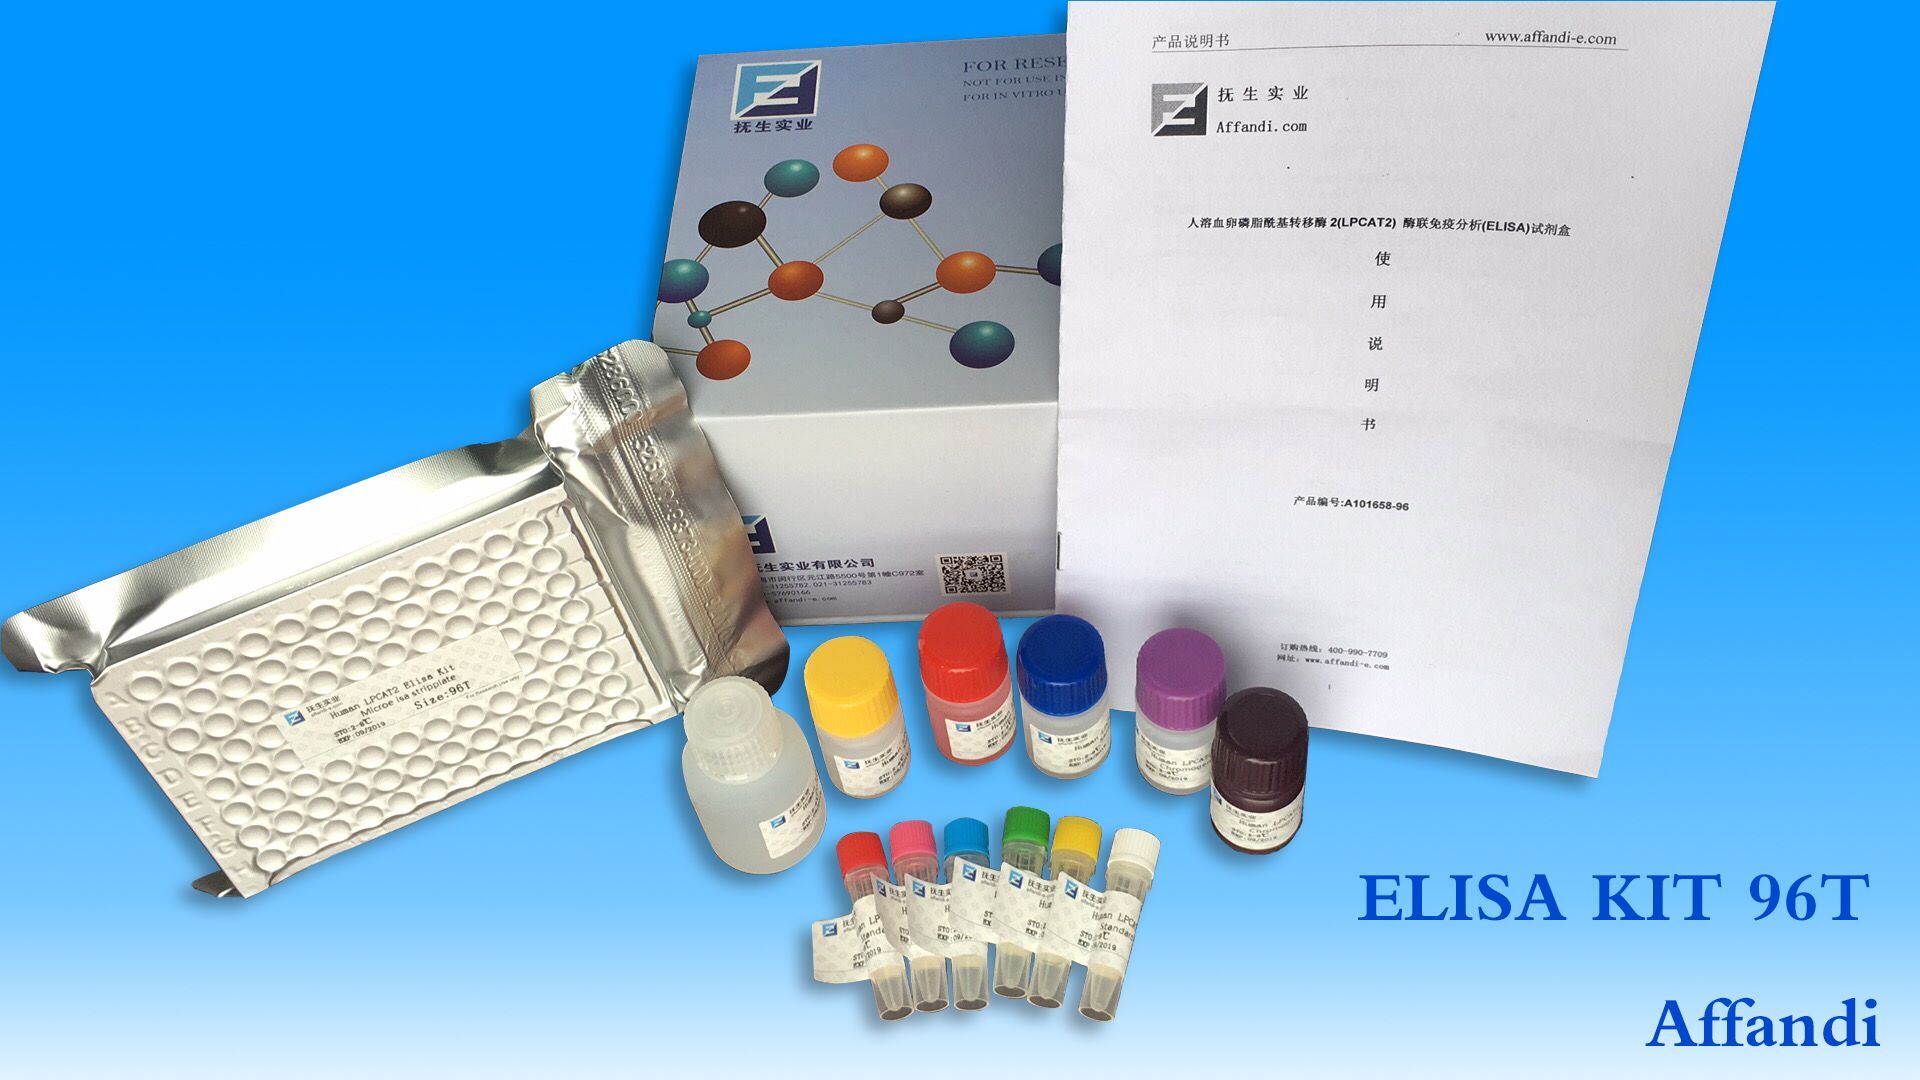 FOR Very low-density lipoprotein ELISA Kit